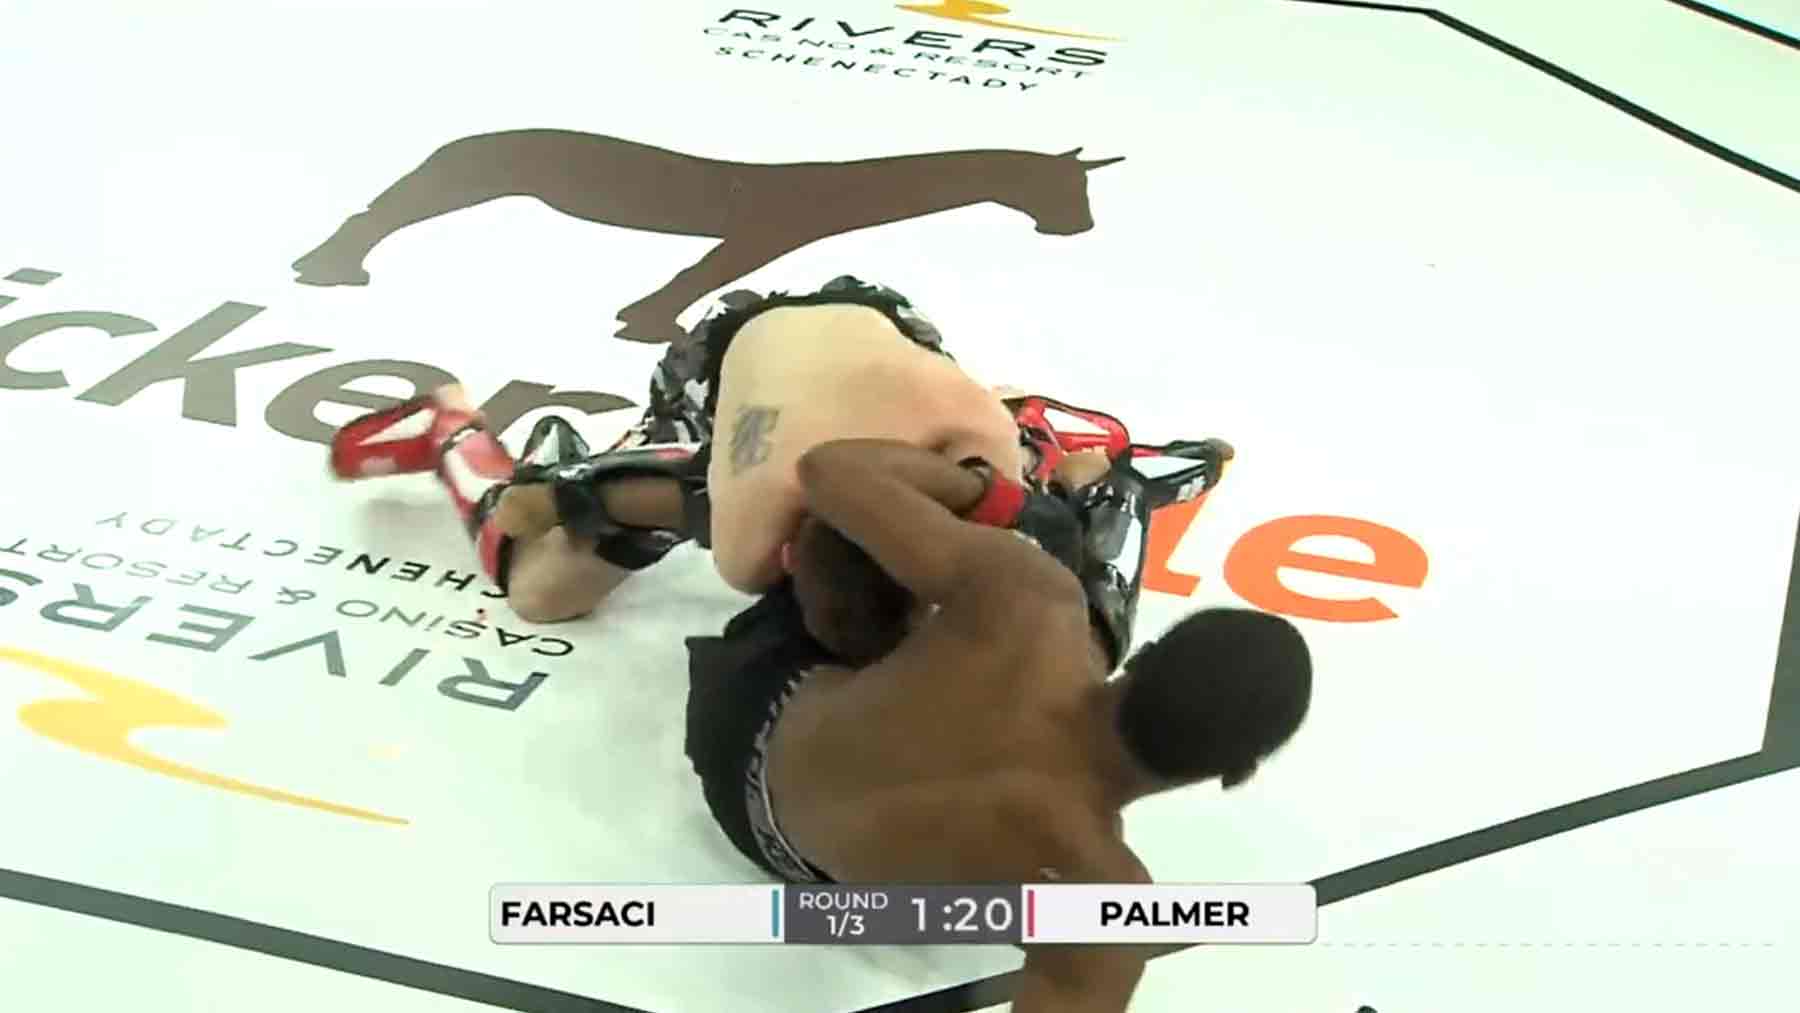 Imágenes muy duras en una pelea de MMA: es difícil mantener la mirada